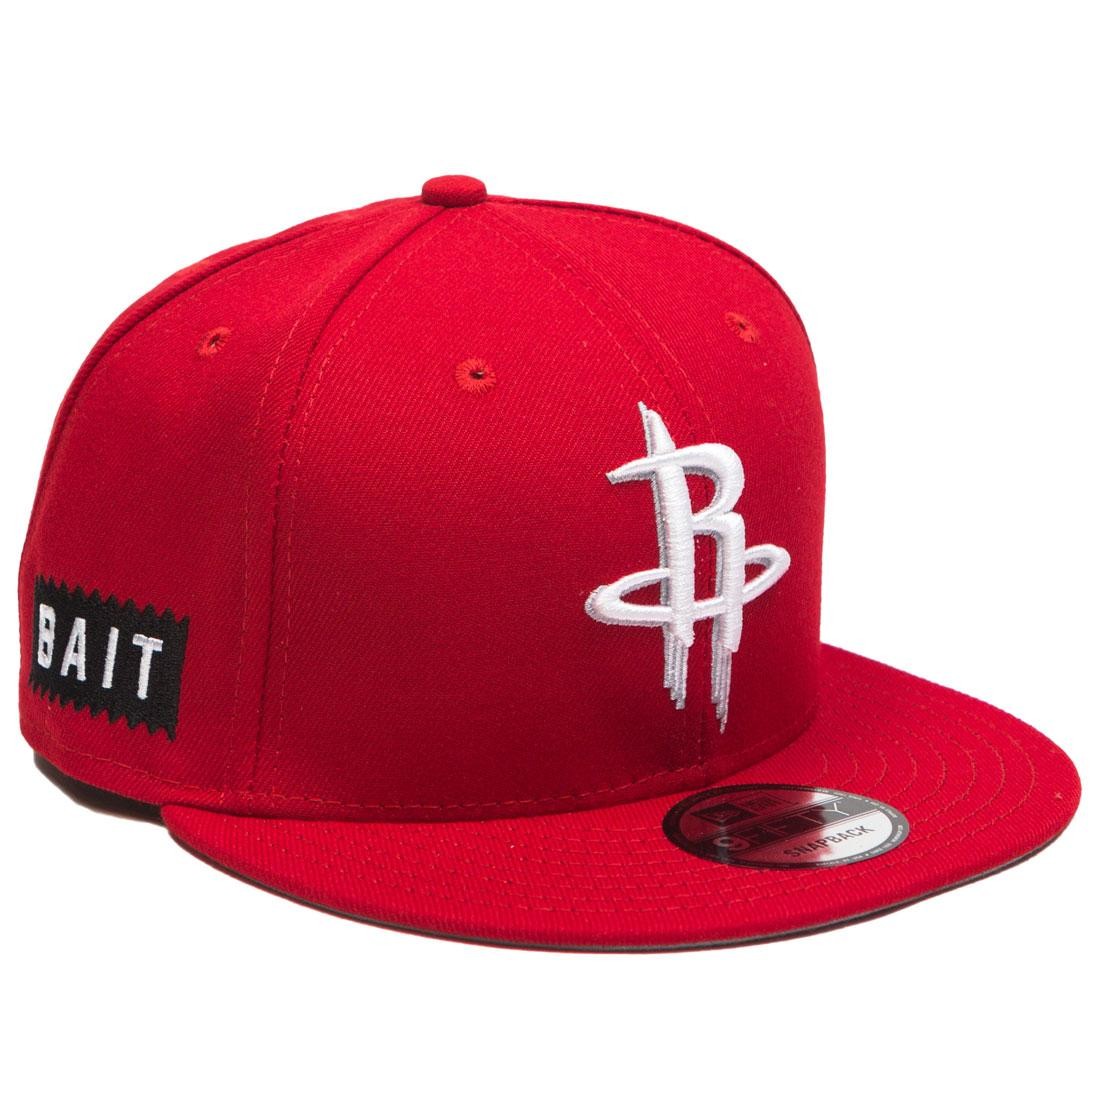 Cheap Urlfreeze Jordan Outlet x NBA X New Era 9Fifty Houston Rockets Scarlet Snapback Cap (red)